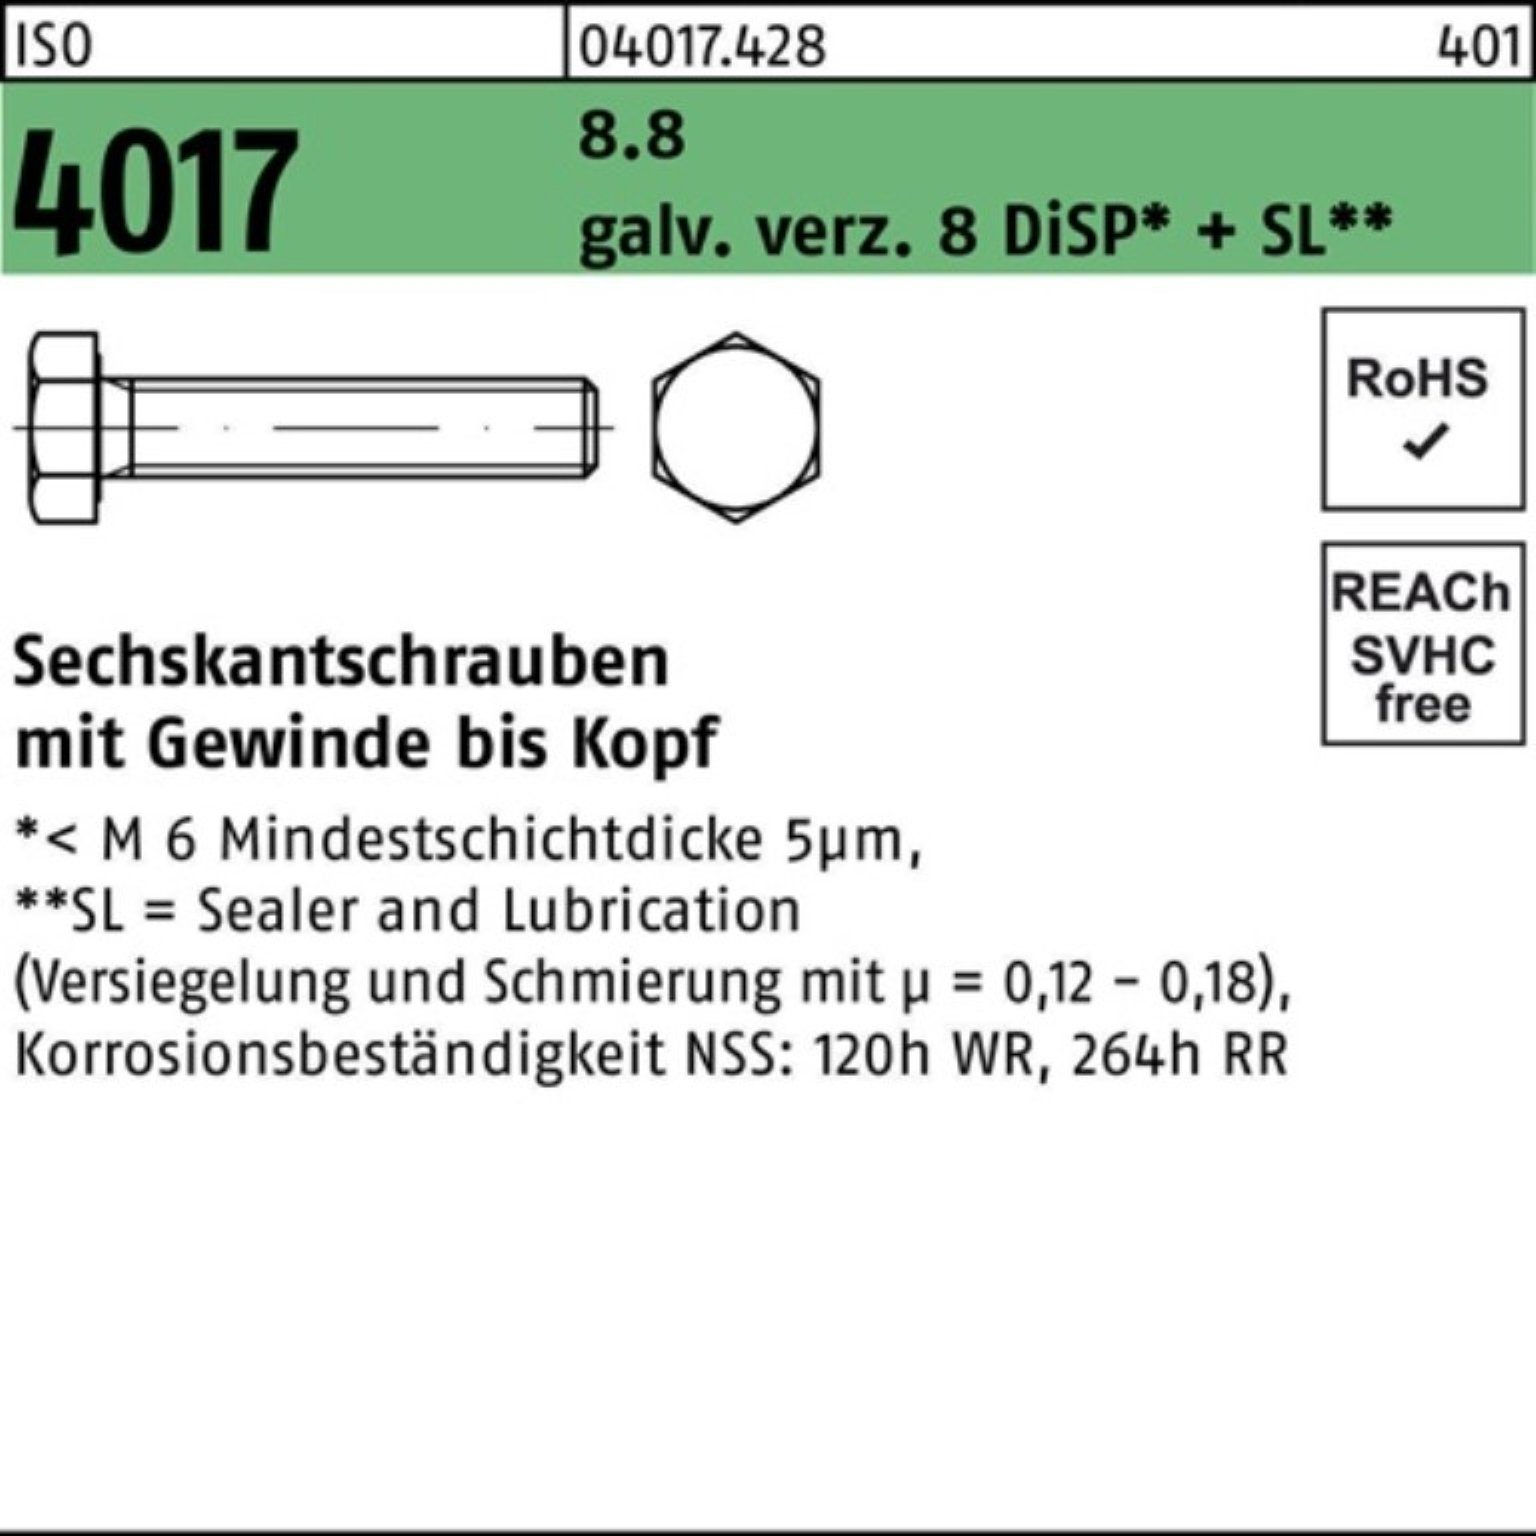 VG Pack Bufab DiSP 4017 ISO Sechskantschraube M24x 8 galv.verz. 8.8 55 100er Sechskantschraube